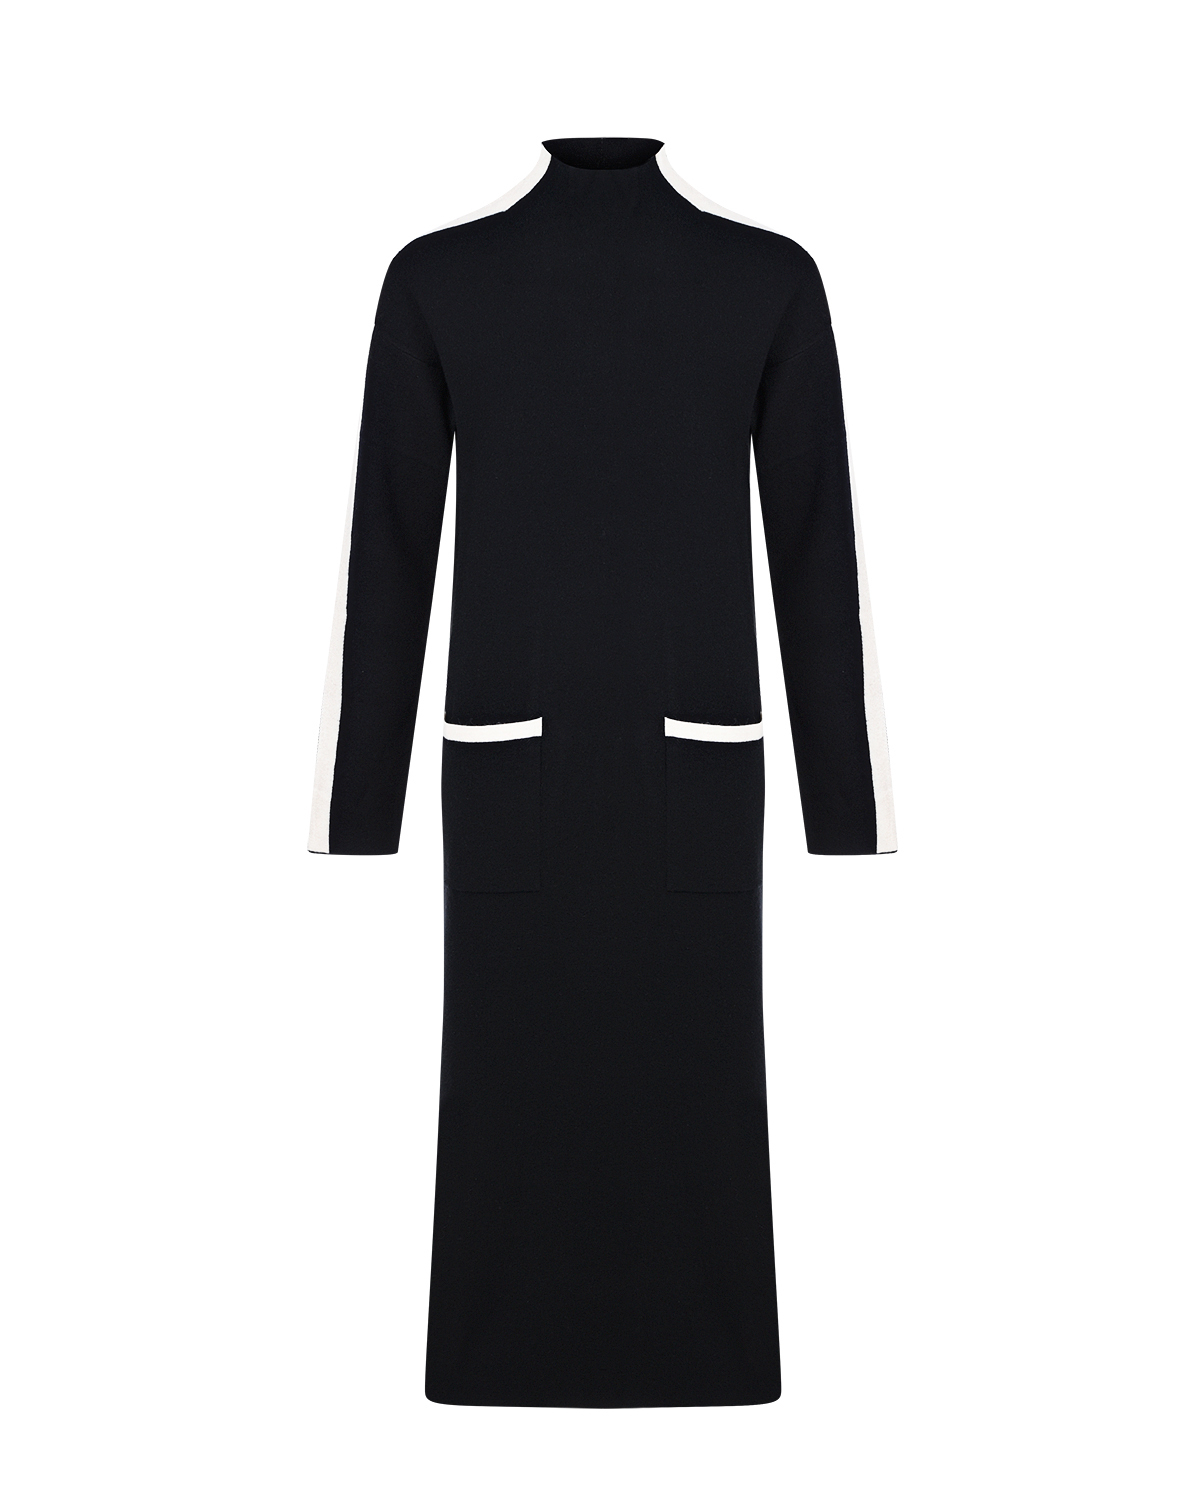 Черное платье с белыми лампасами Deha, размер 42, цвет черный - фото 1